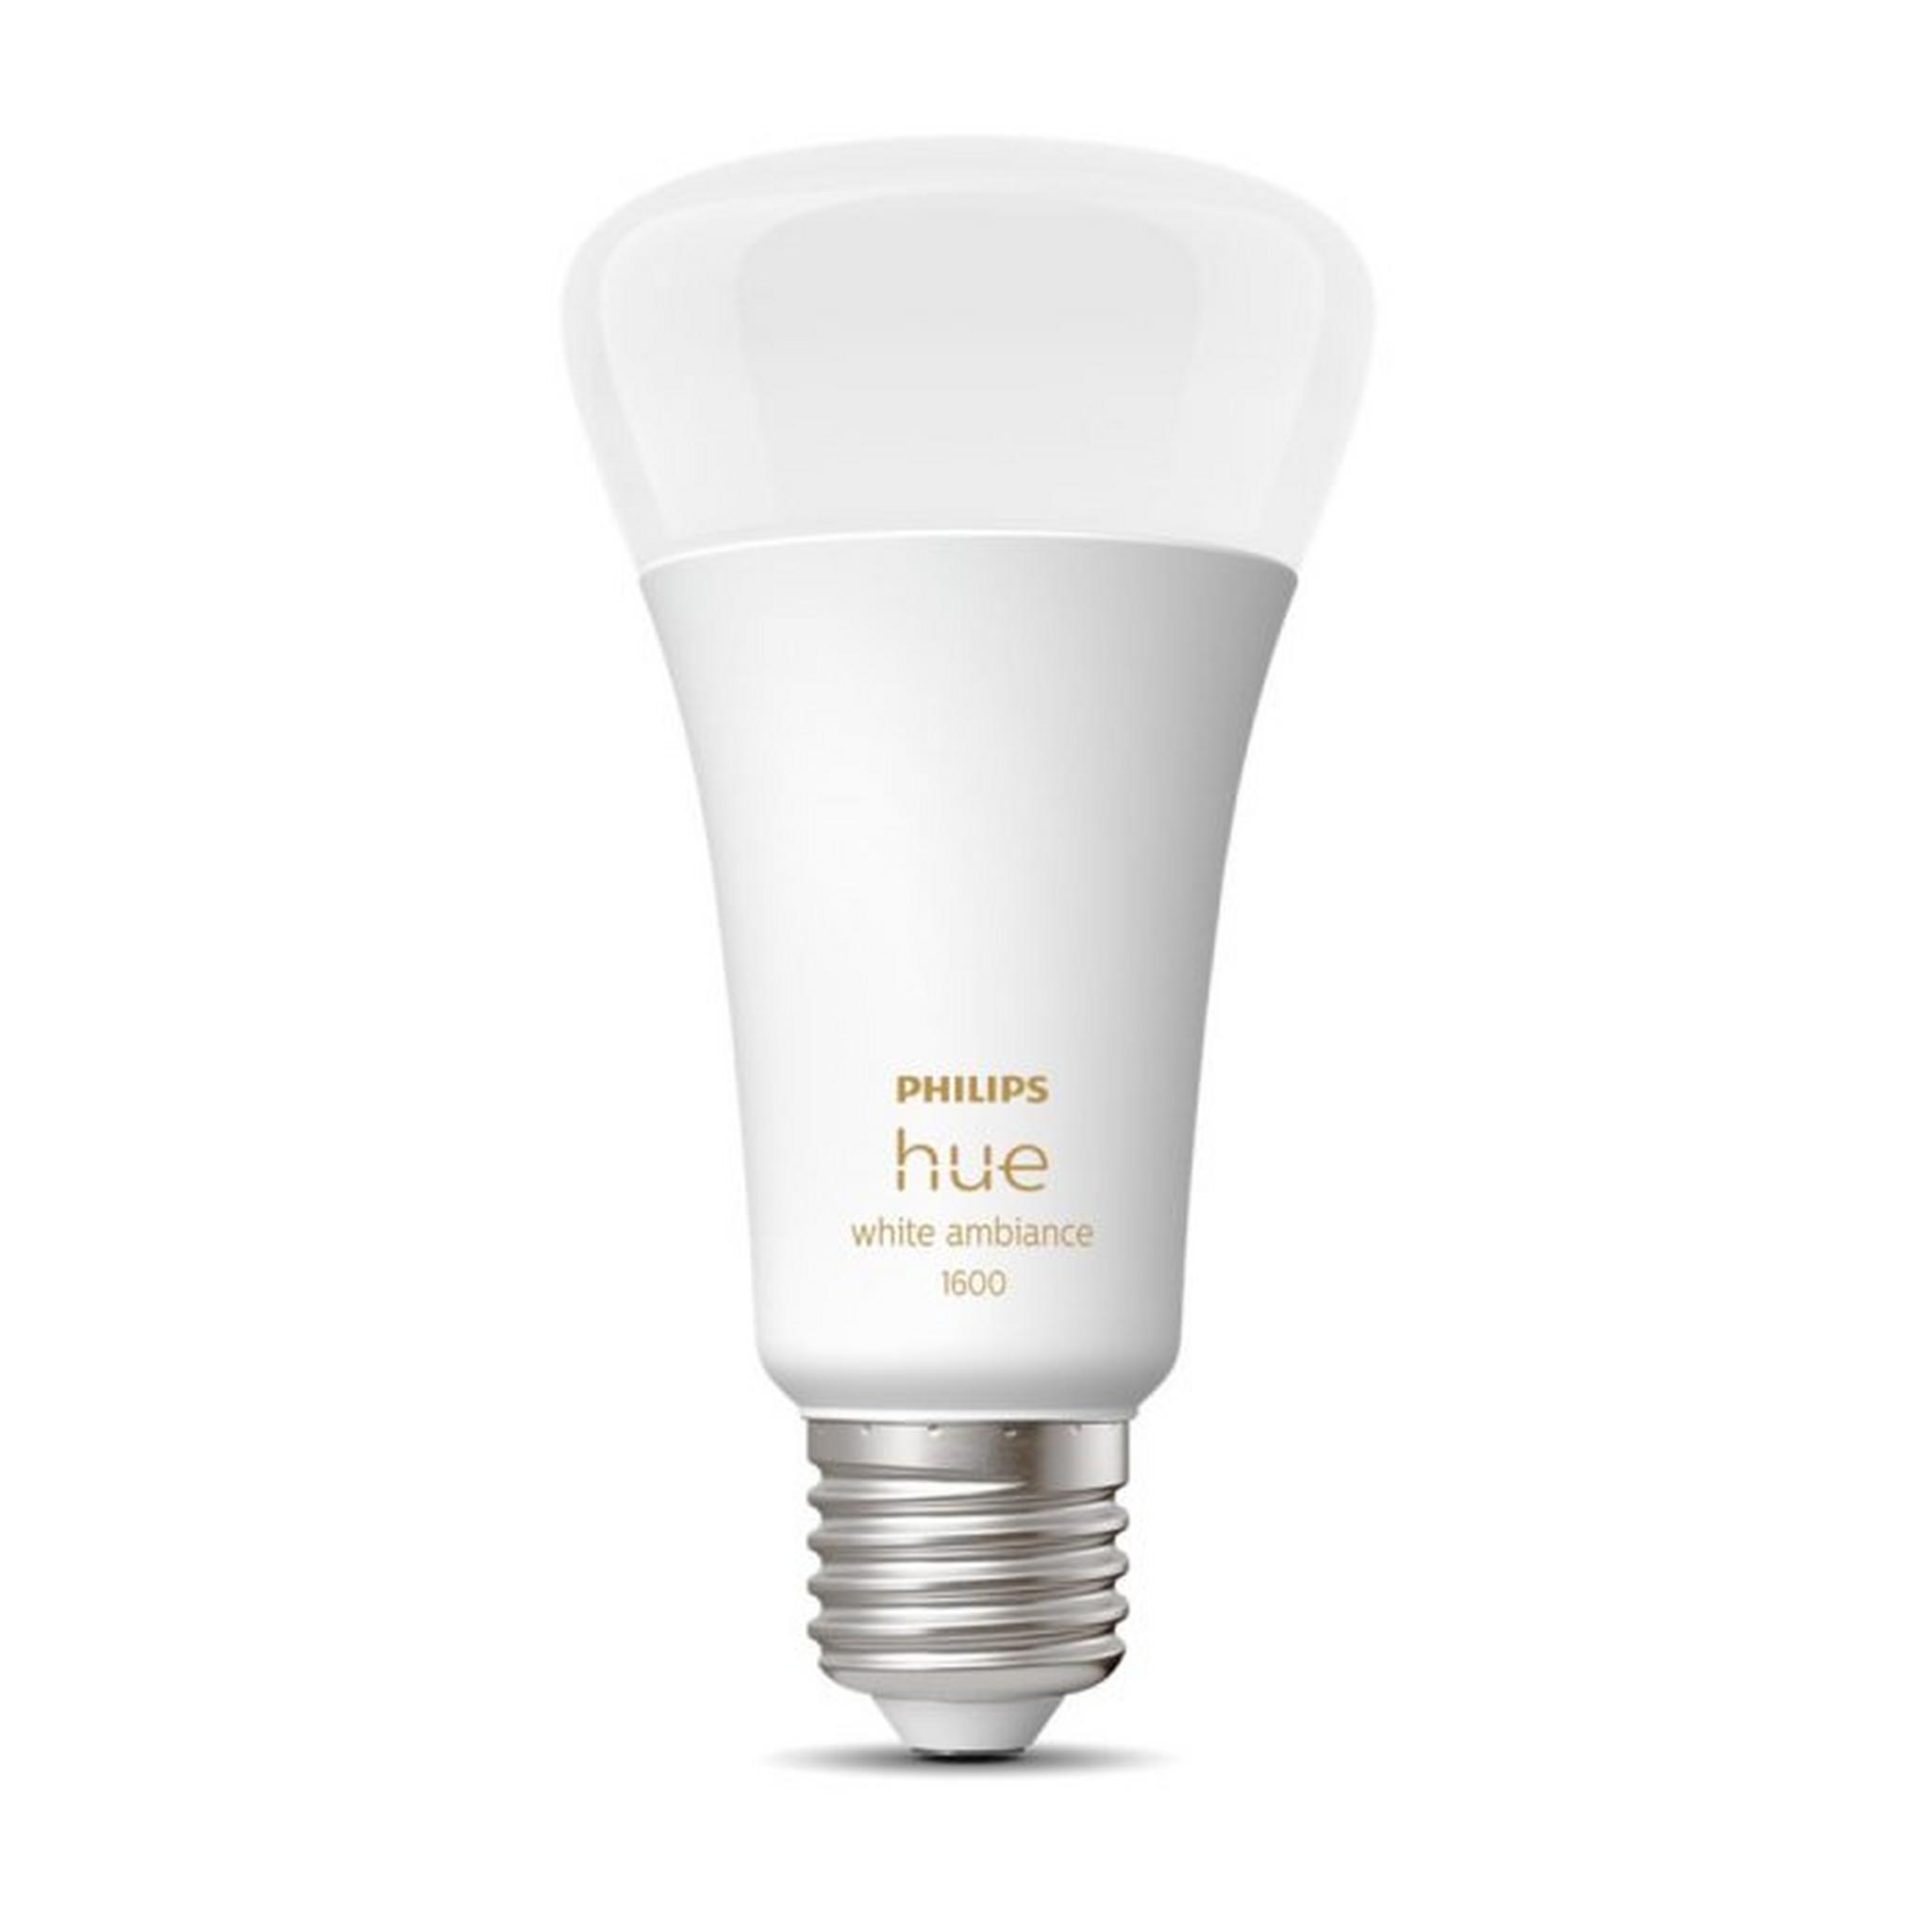 Philips Hue White Ambiance A67 E27 Smart Bulb, 13-Watt, 1600 Lumen, 929002471901 – White